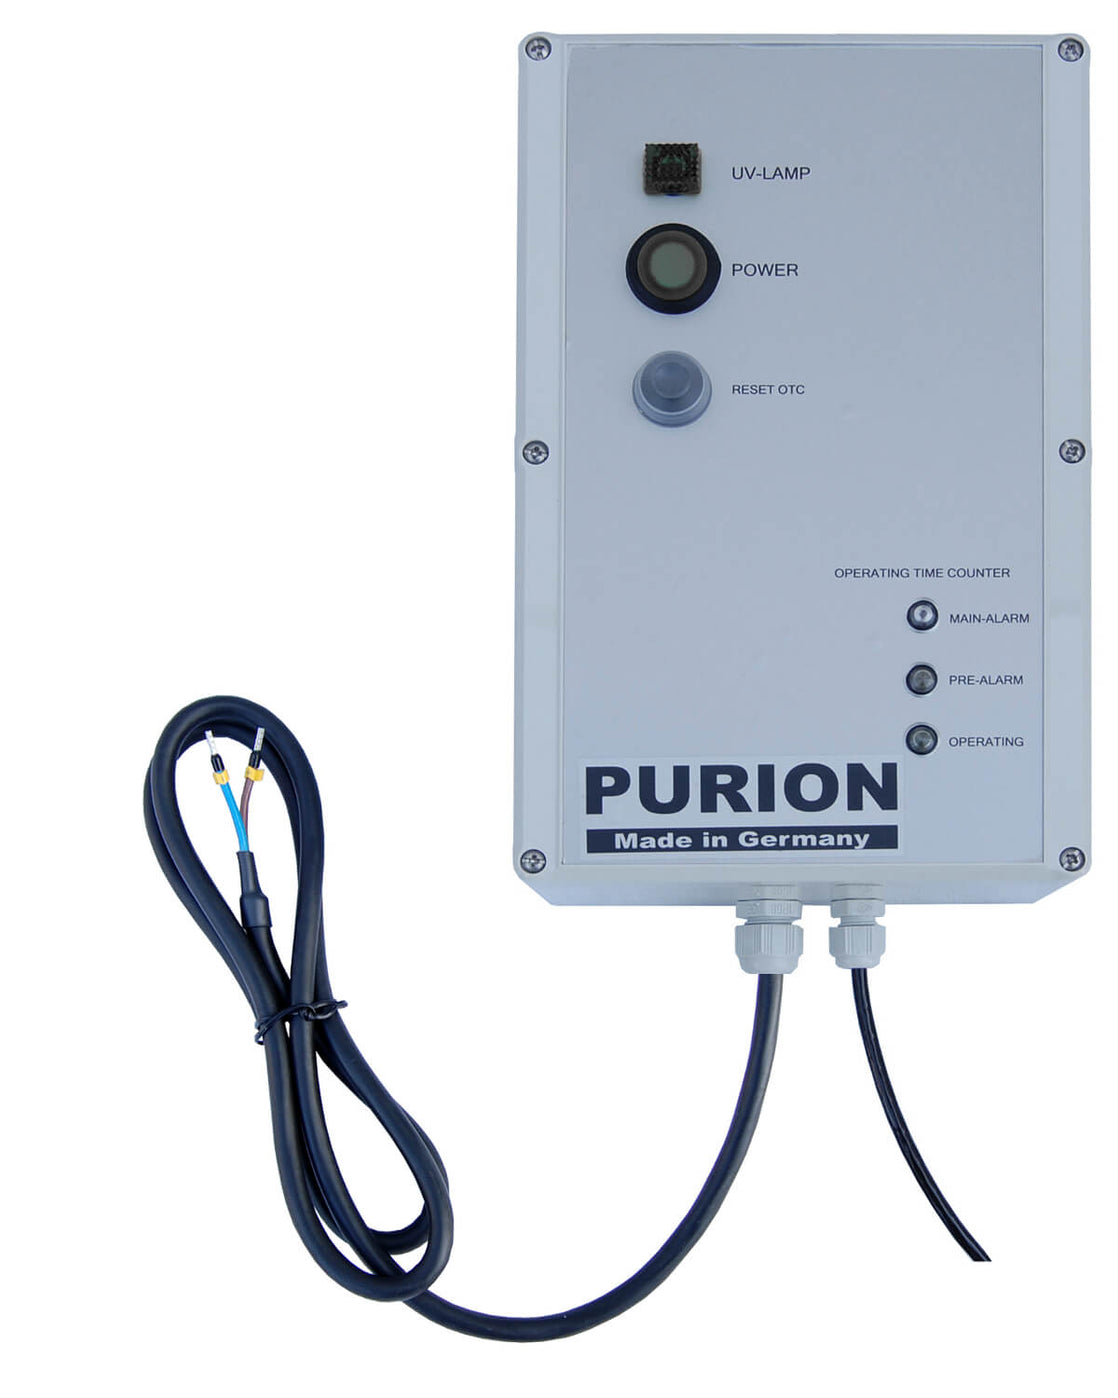 Purion GmbH ist ein fortschrittliches Kompaktsystem MAX, das über eine leistungsstarke PURION UV-C-Desinfektionslage verfügt. Mit seinem leistungsstarken Partikelfilter beseitigt er effektiv Schadstoffe.